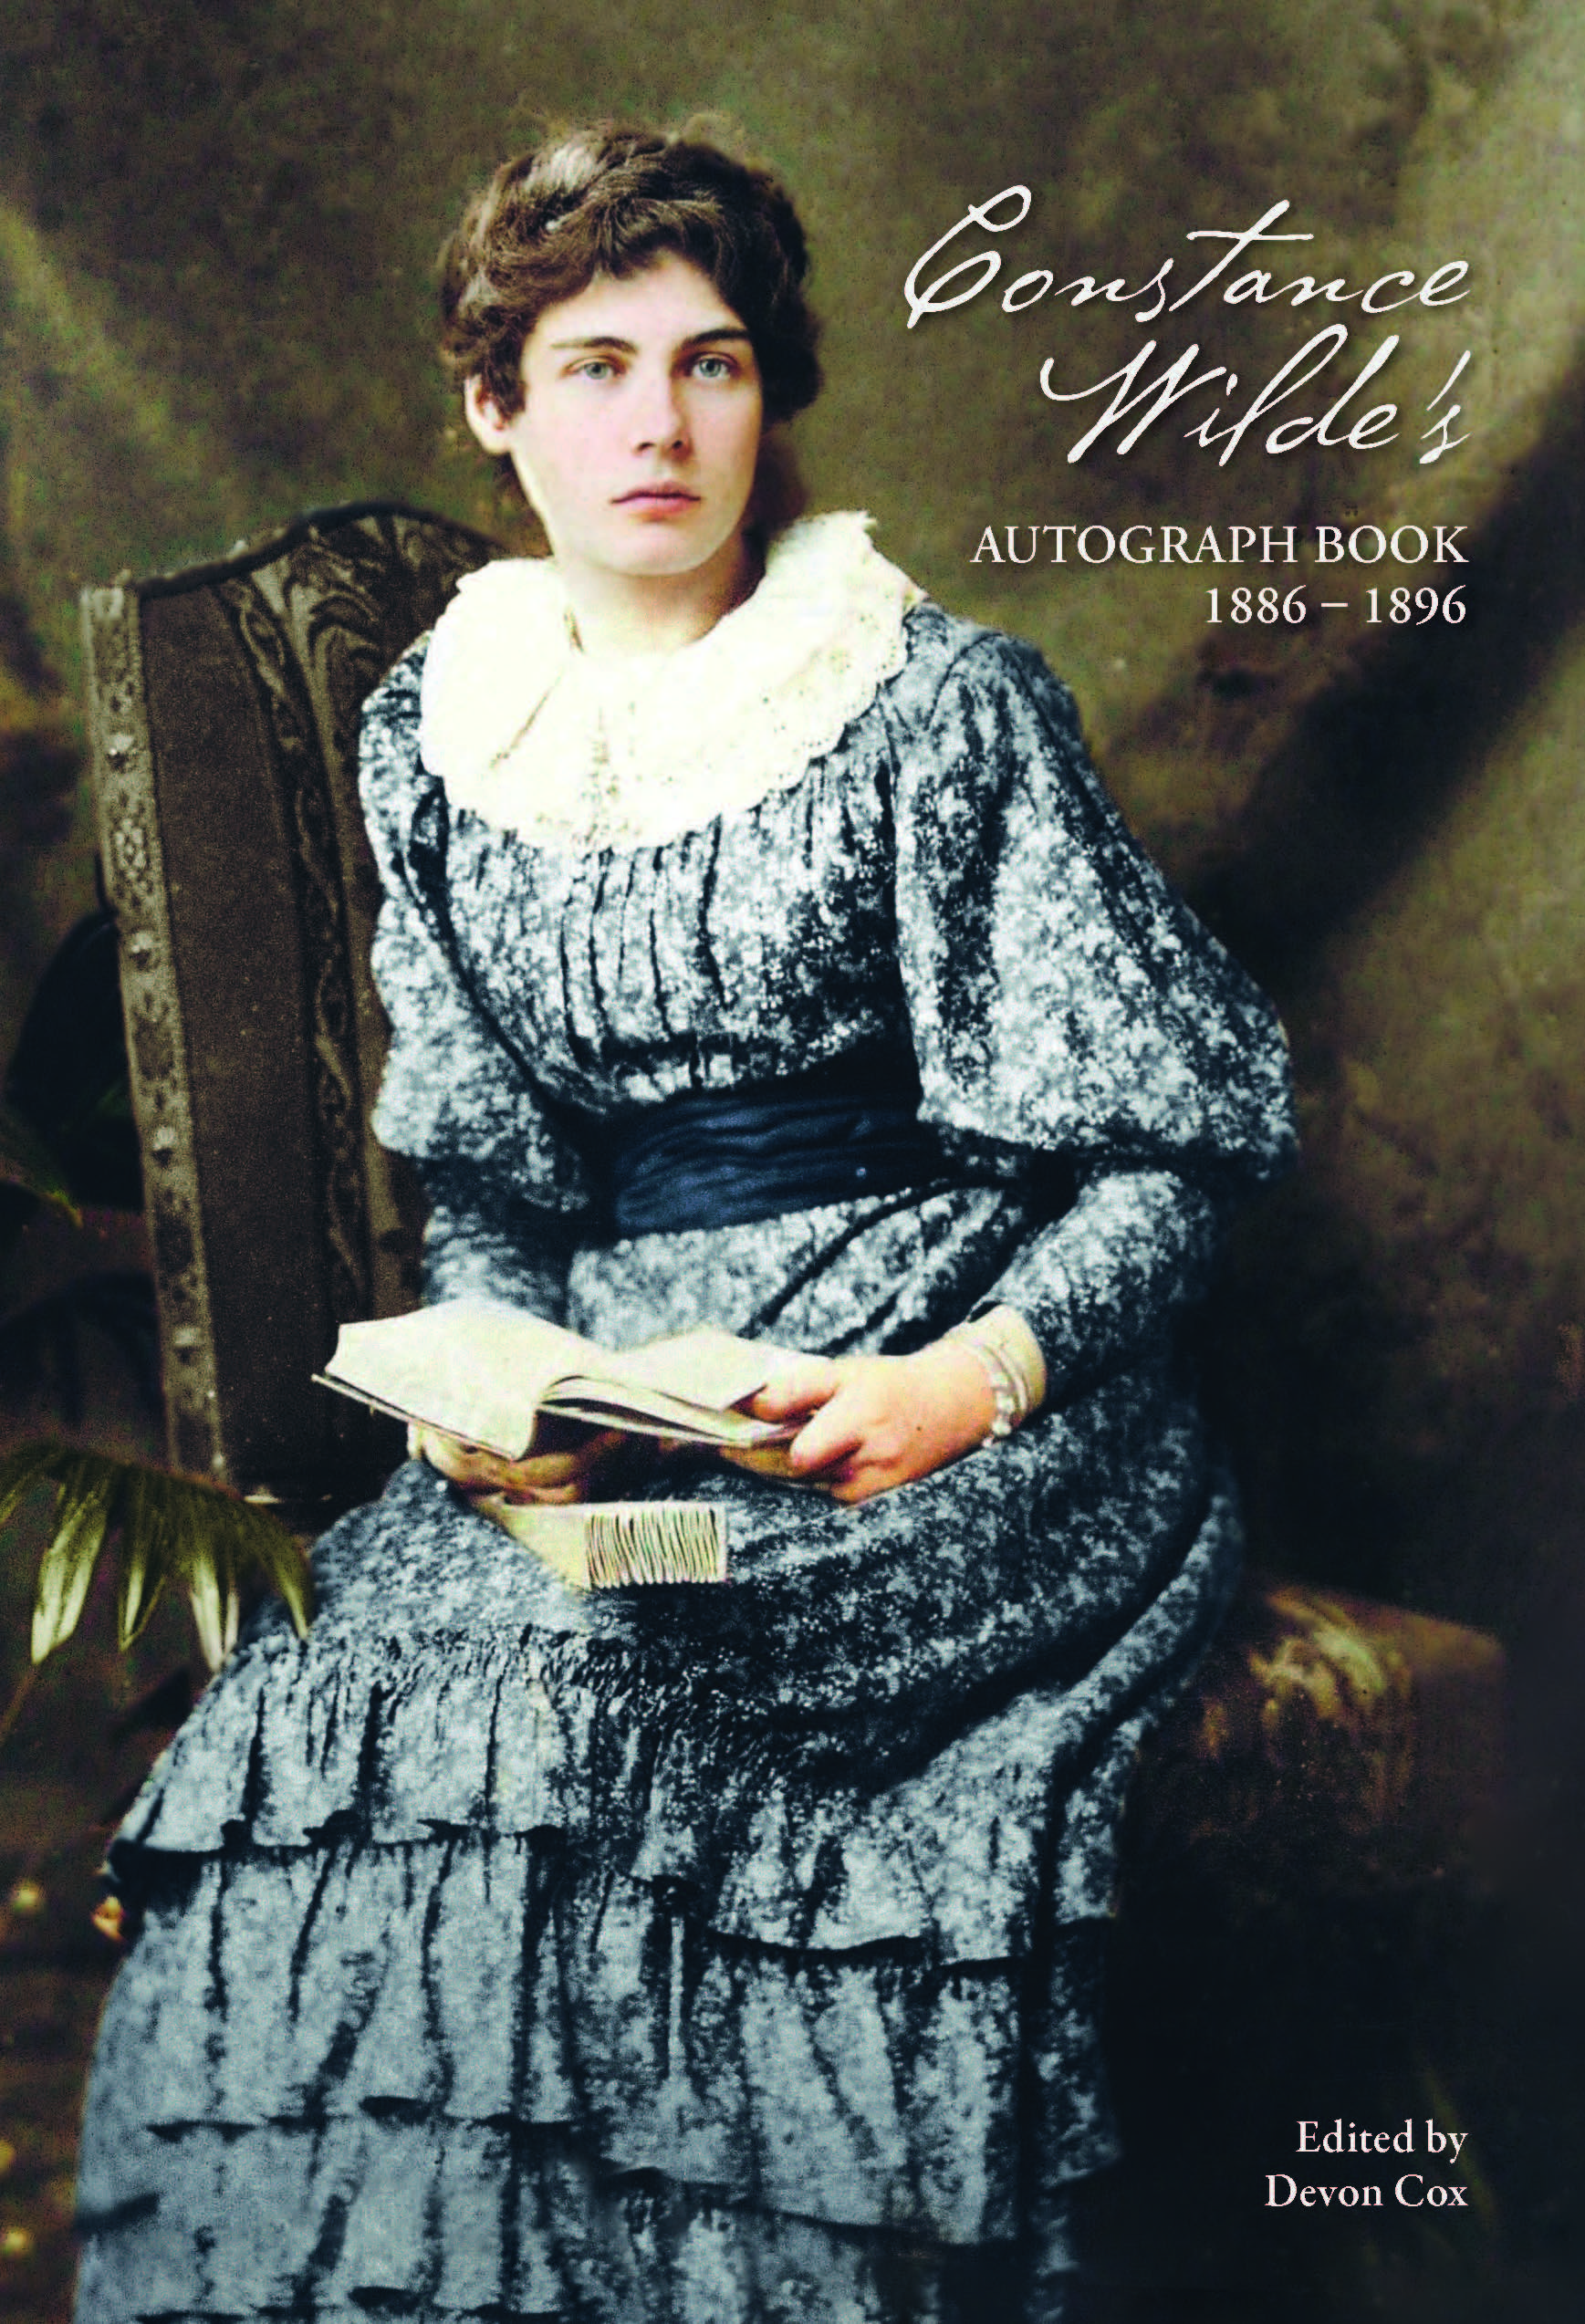 Constance Wilde's Autograph Book - The Oscar Wilde Society